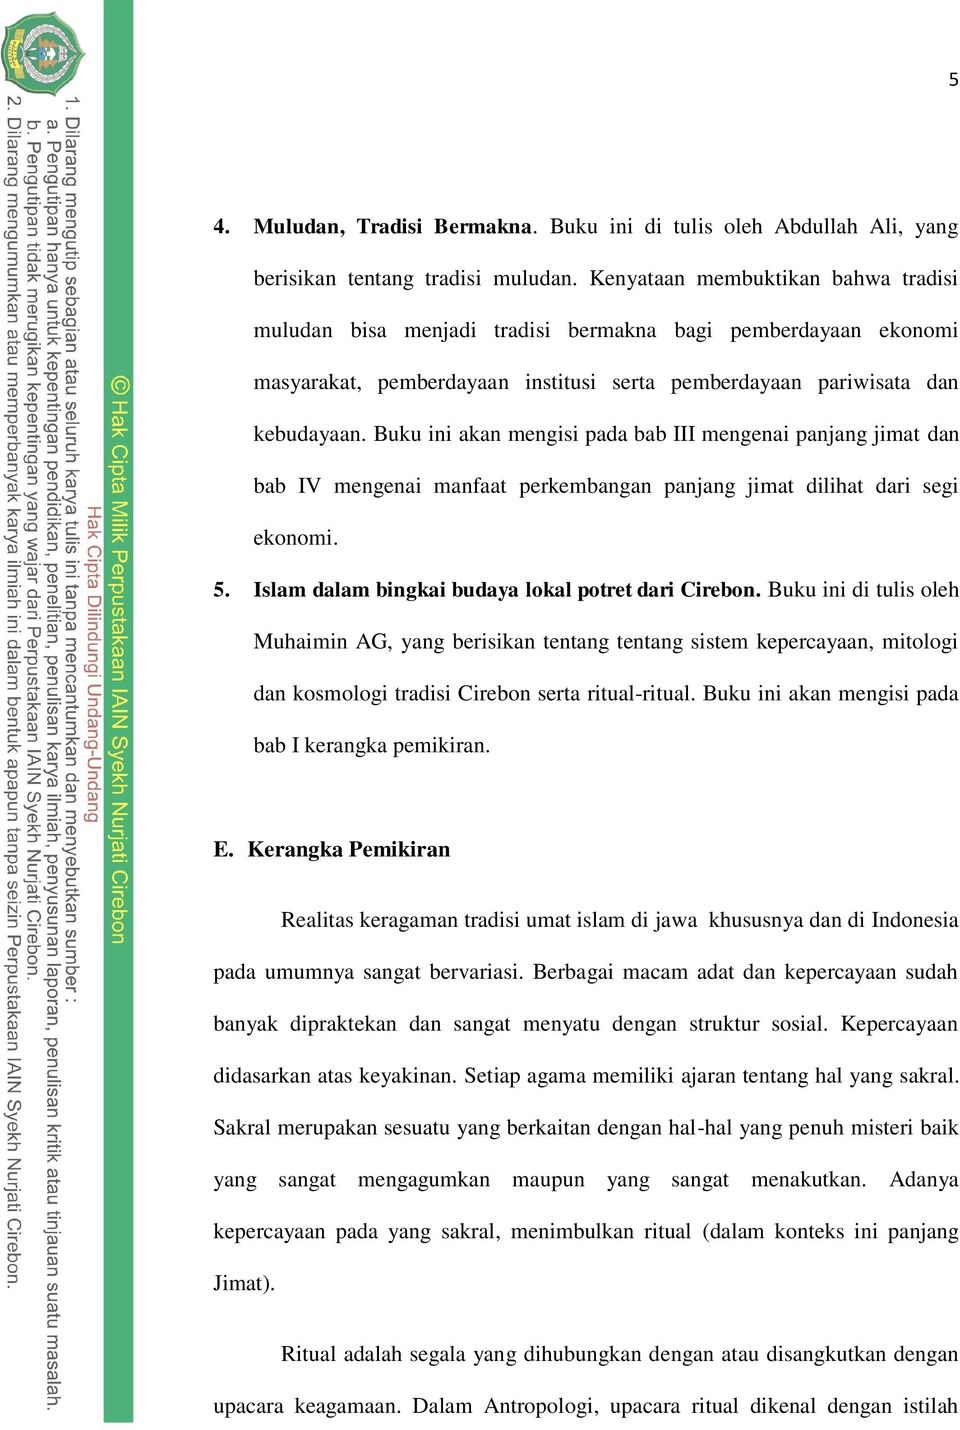 Buku ini akan mengisi pada bab III mengenai panjang jimat dan bab IV mengenai manfaat perkembangan panjang jimat dilihat dari segi ekonomi. 5. Islam dalam bingkai budaya lokal potret dari Cirebon.